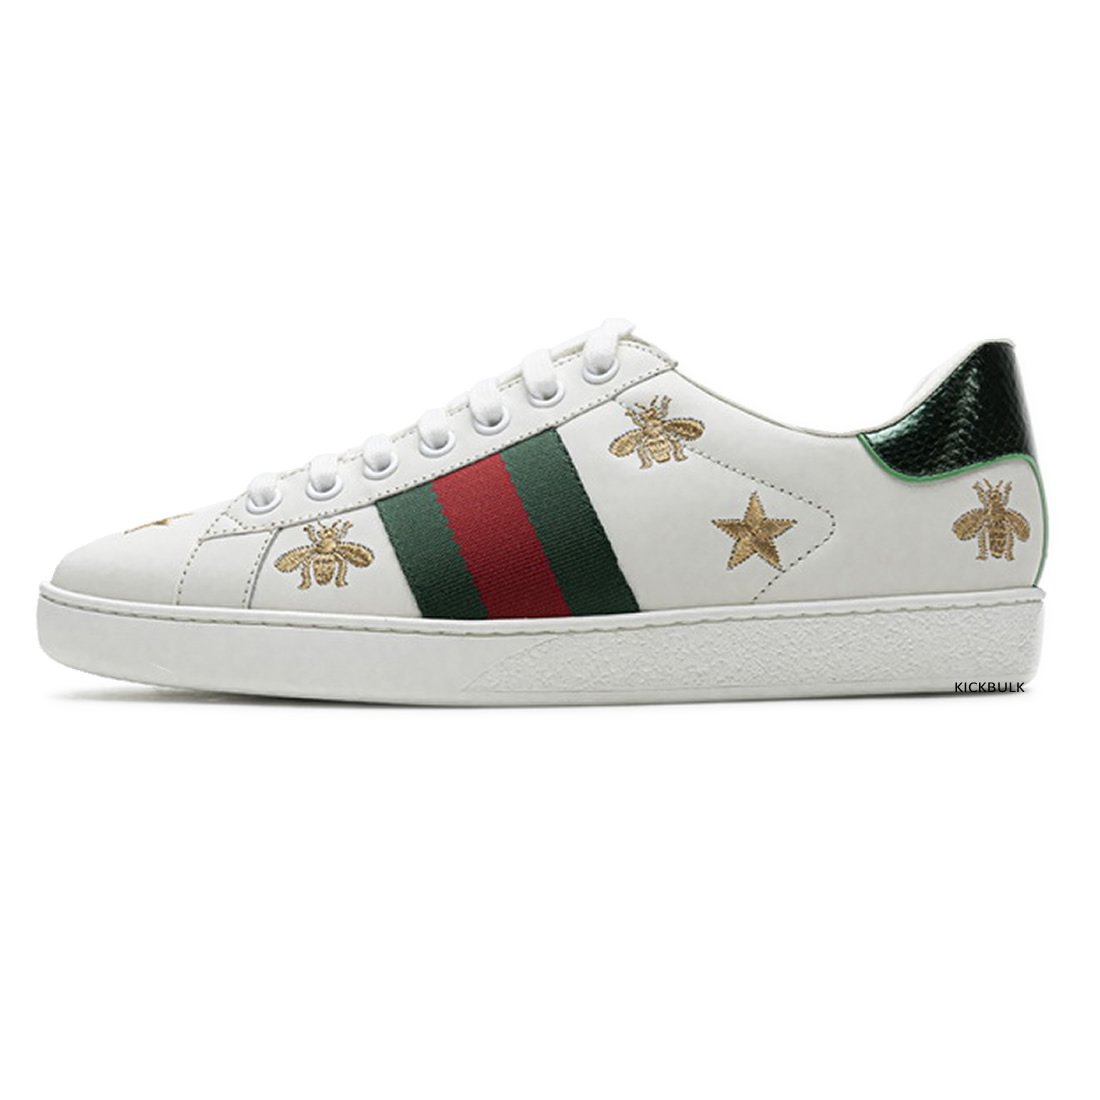 Gucci Stars Sneakers 429446a39gq9085 1 - kickbulk.co